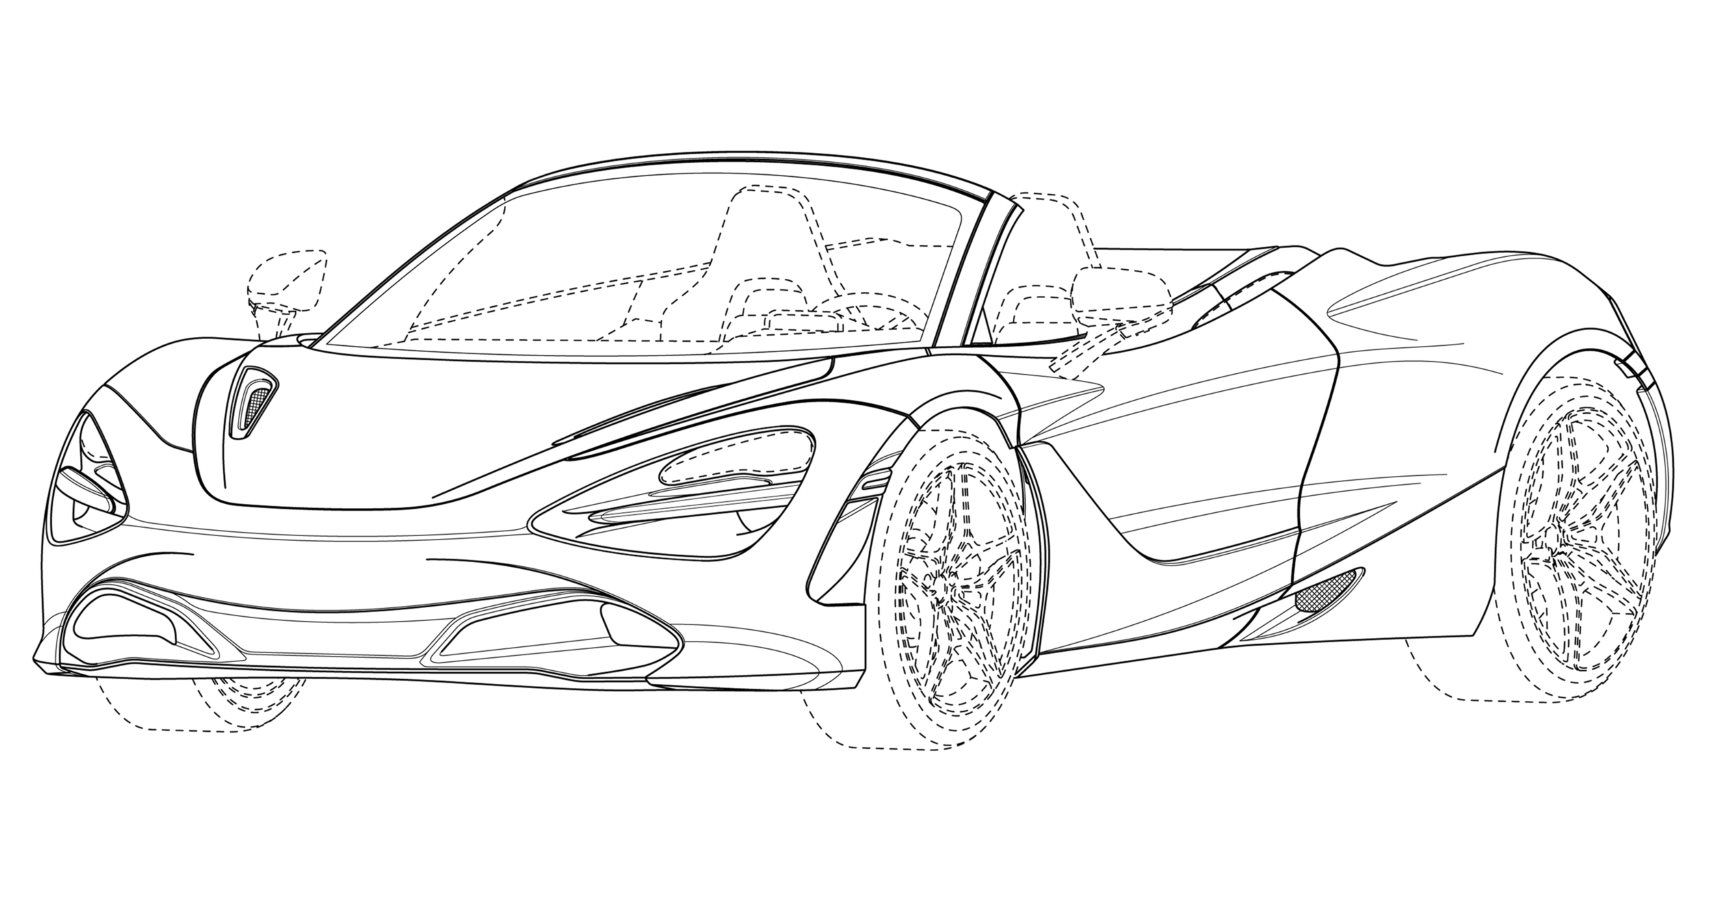 McLaren Spoils 720S Droptop With New Patents